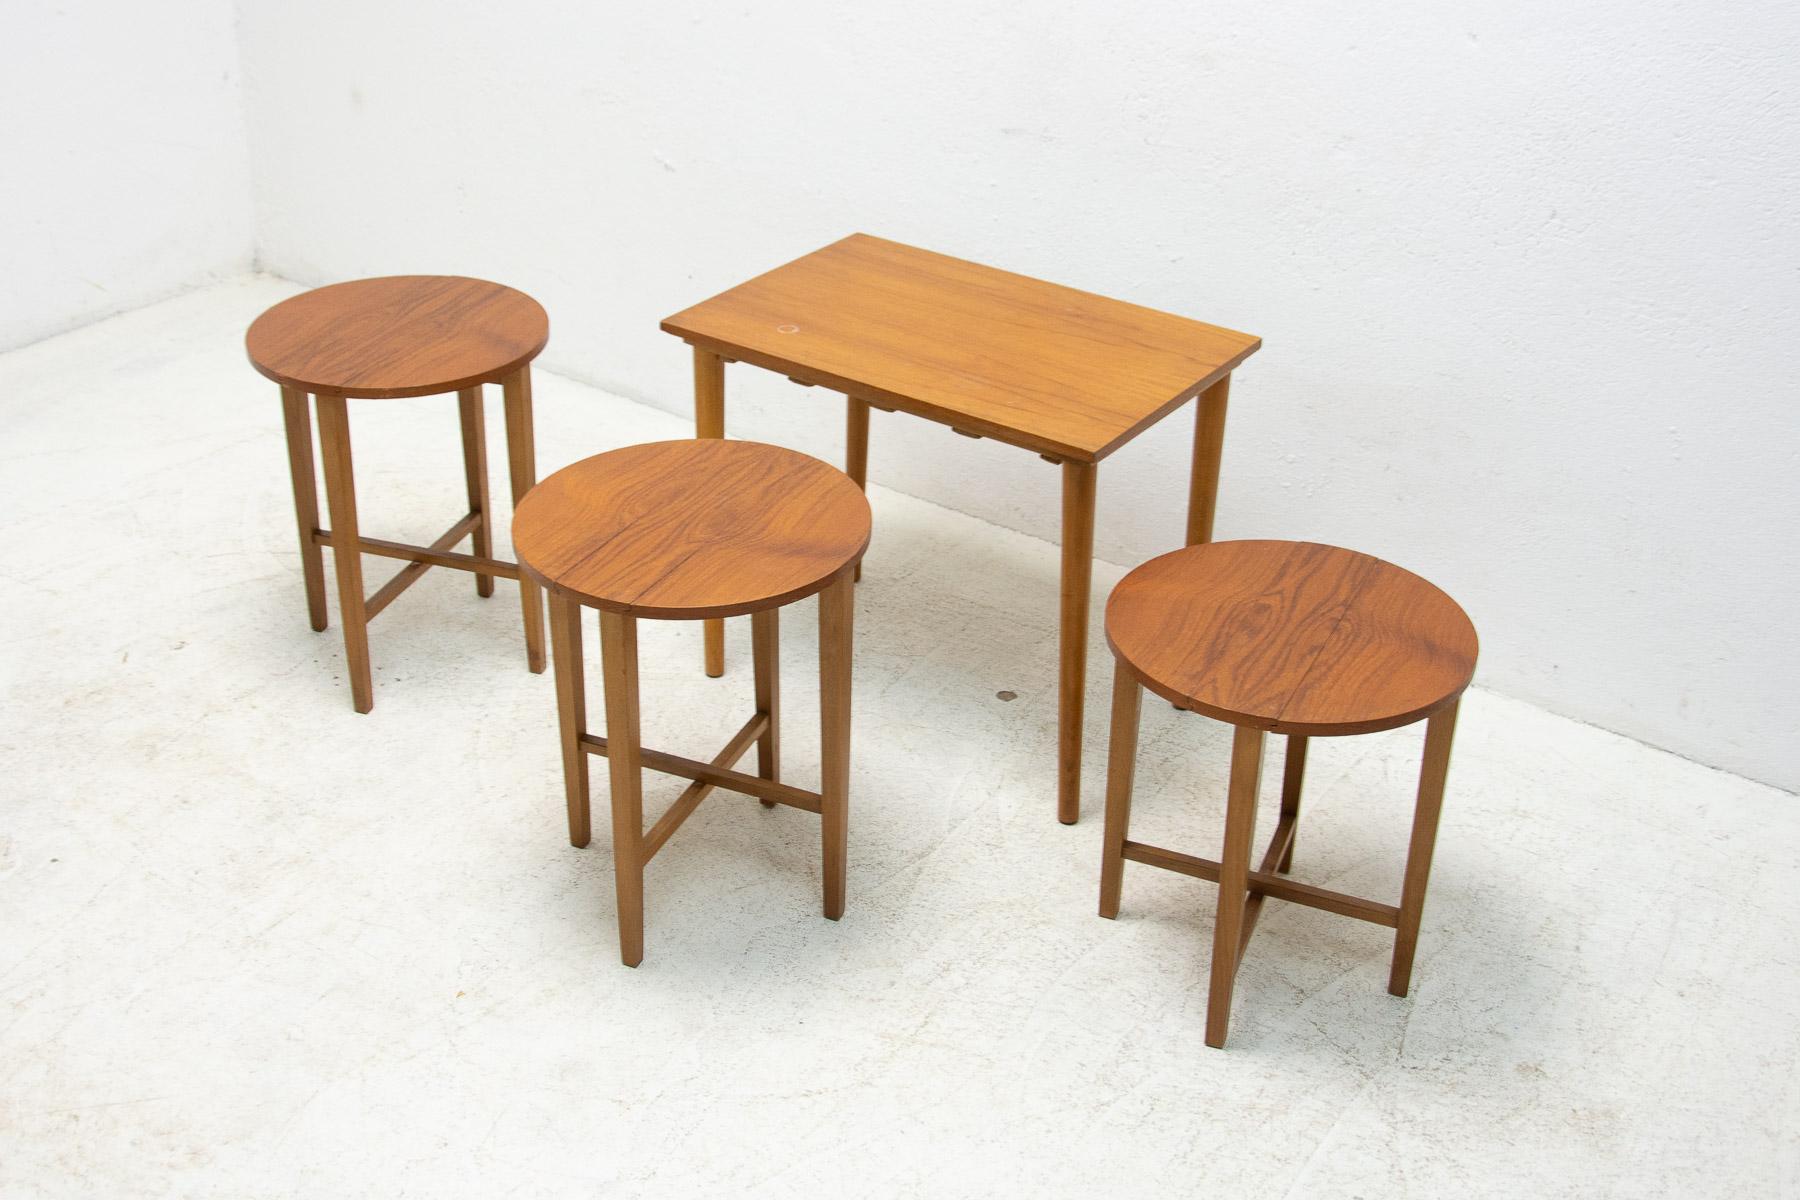 Un célèbre ensemble de quatre tables gigognes conçu par Poul Hundevad dans les années 1960, fabriqué par Novy Domov dans les années 1970.

Il est en bois de Beeche, en très bon état Vintage By.

Dimensions des tabourets :

hauteur : 48